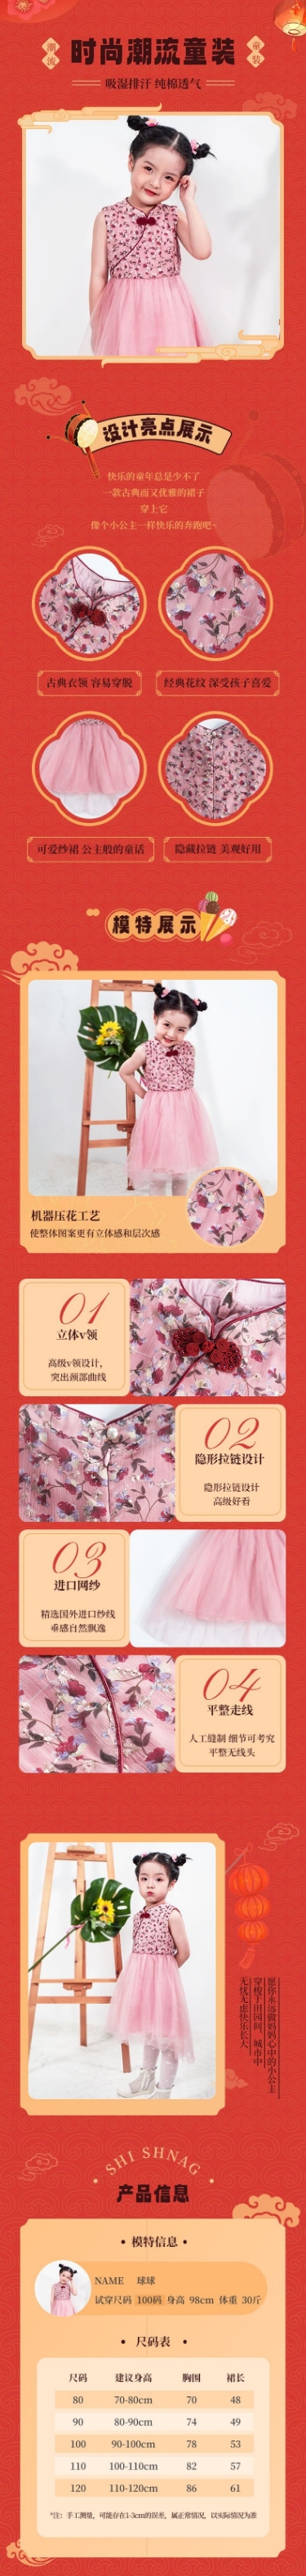 中国风喜庆年货节服装母婴童装详情页预览效果